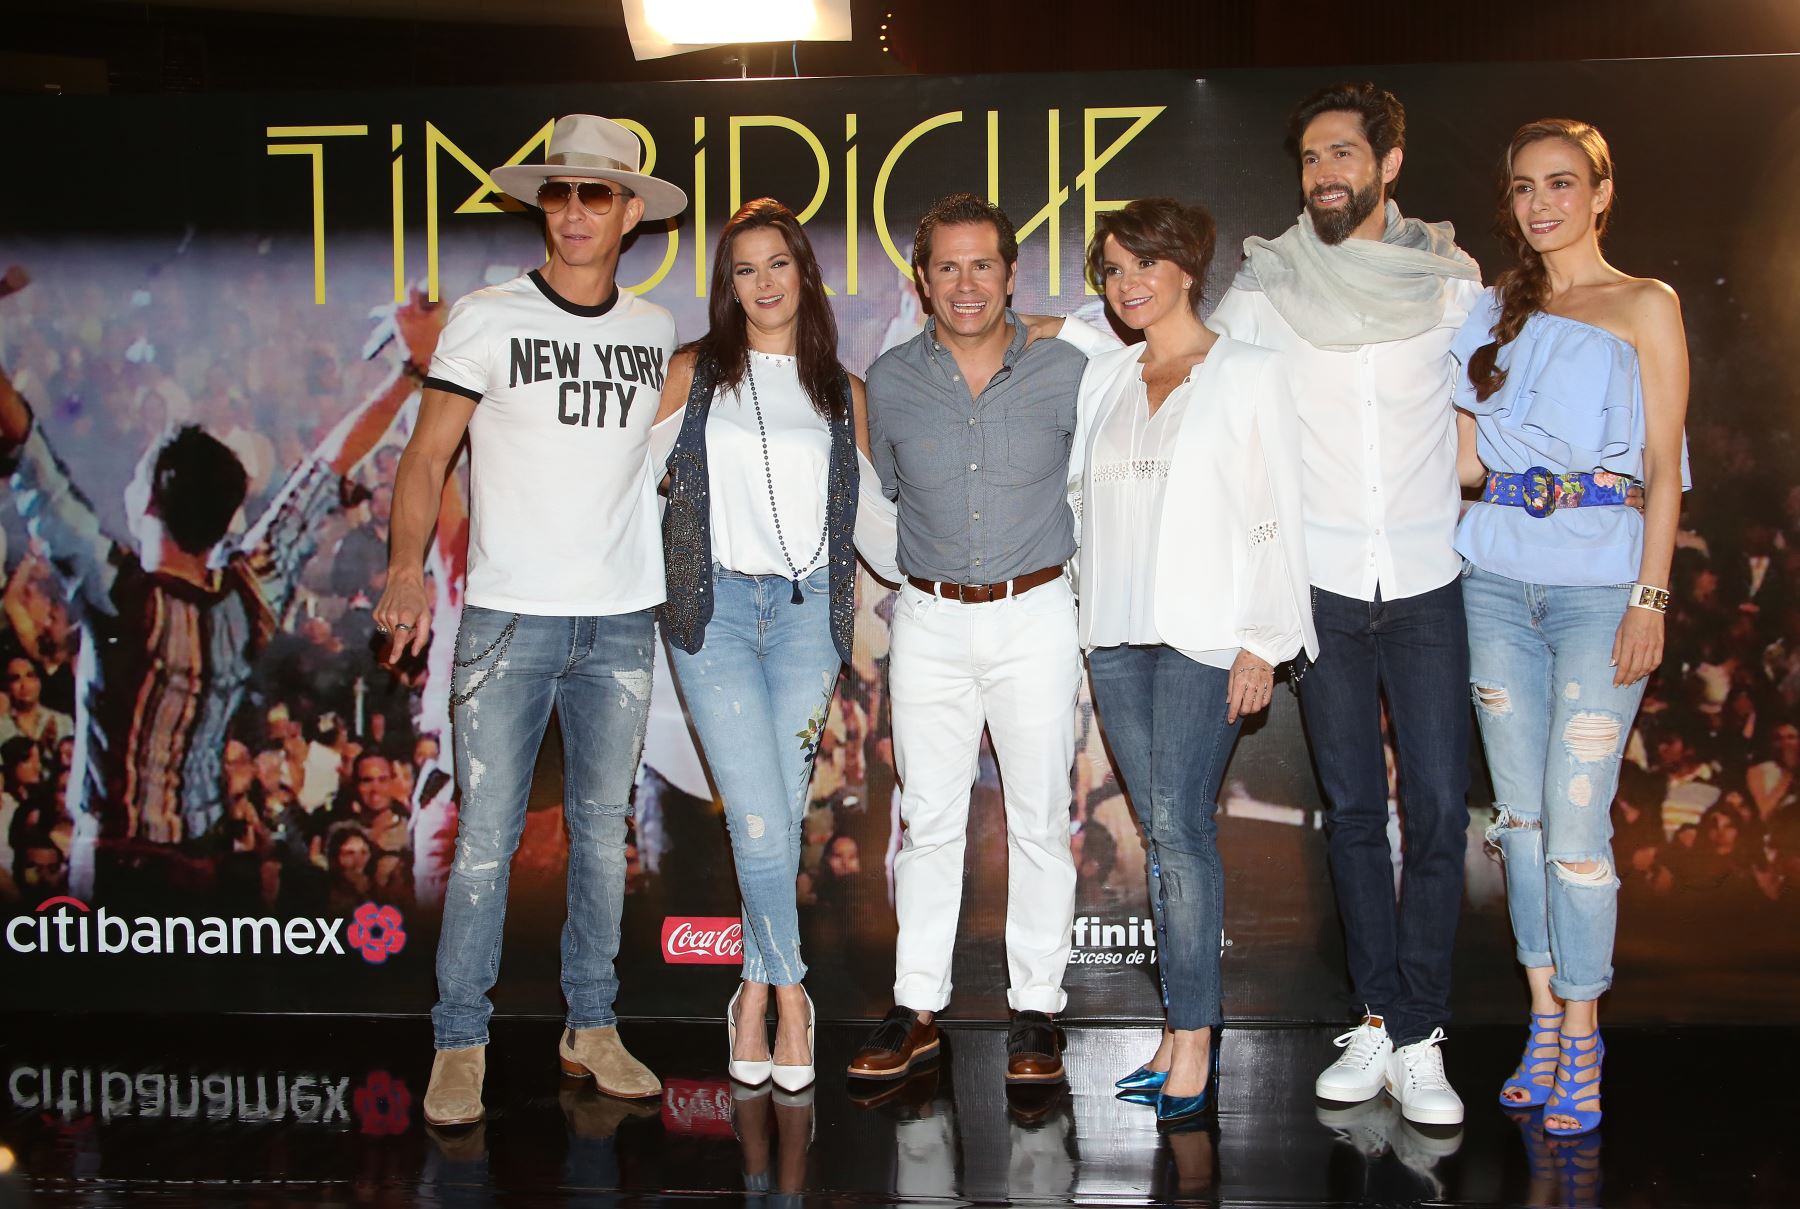 La banda Timbiriche llega a su 40 aniversario sin festejos y entre polémicas